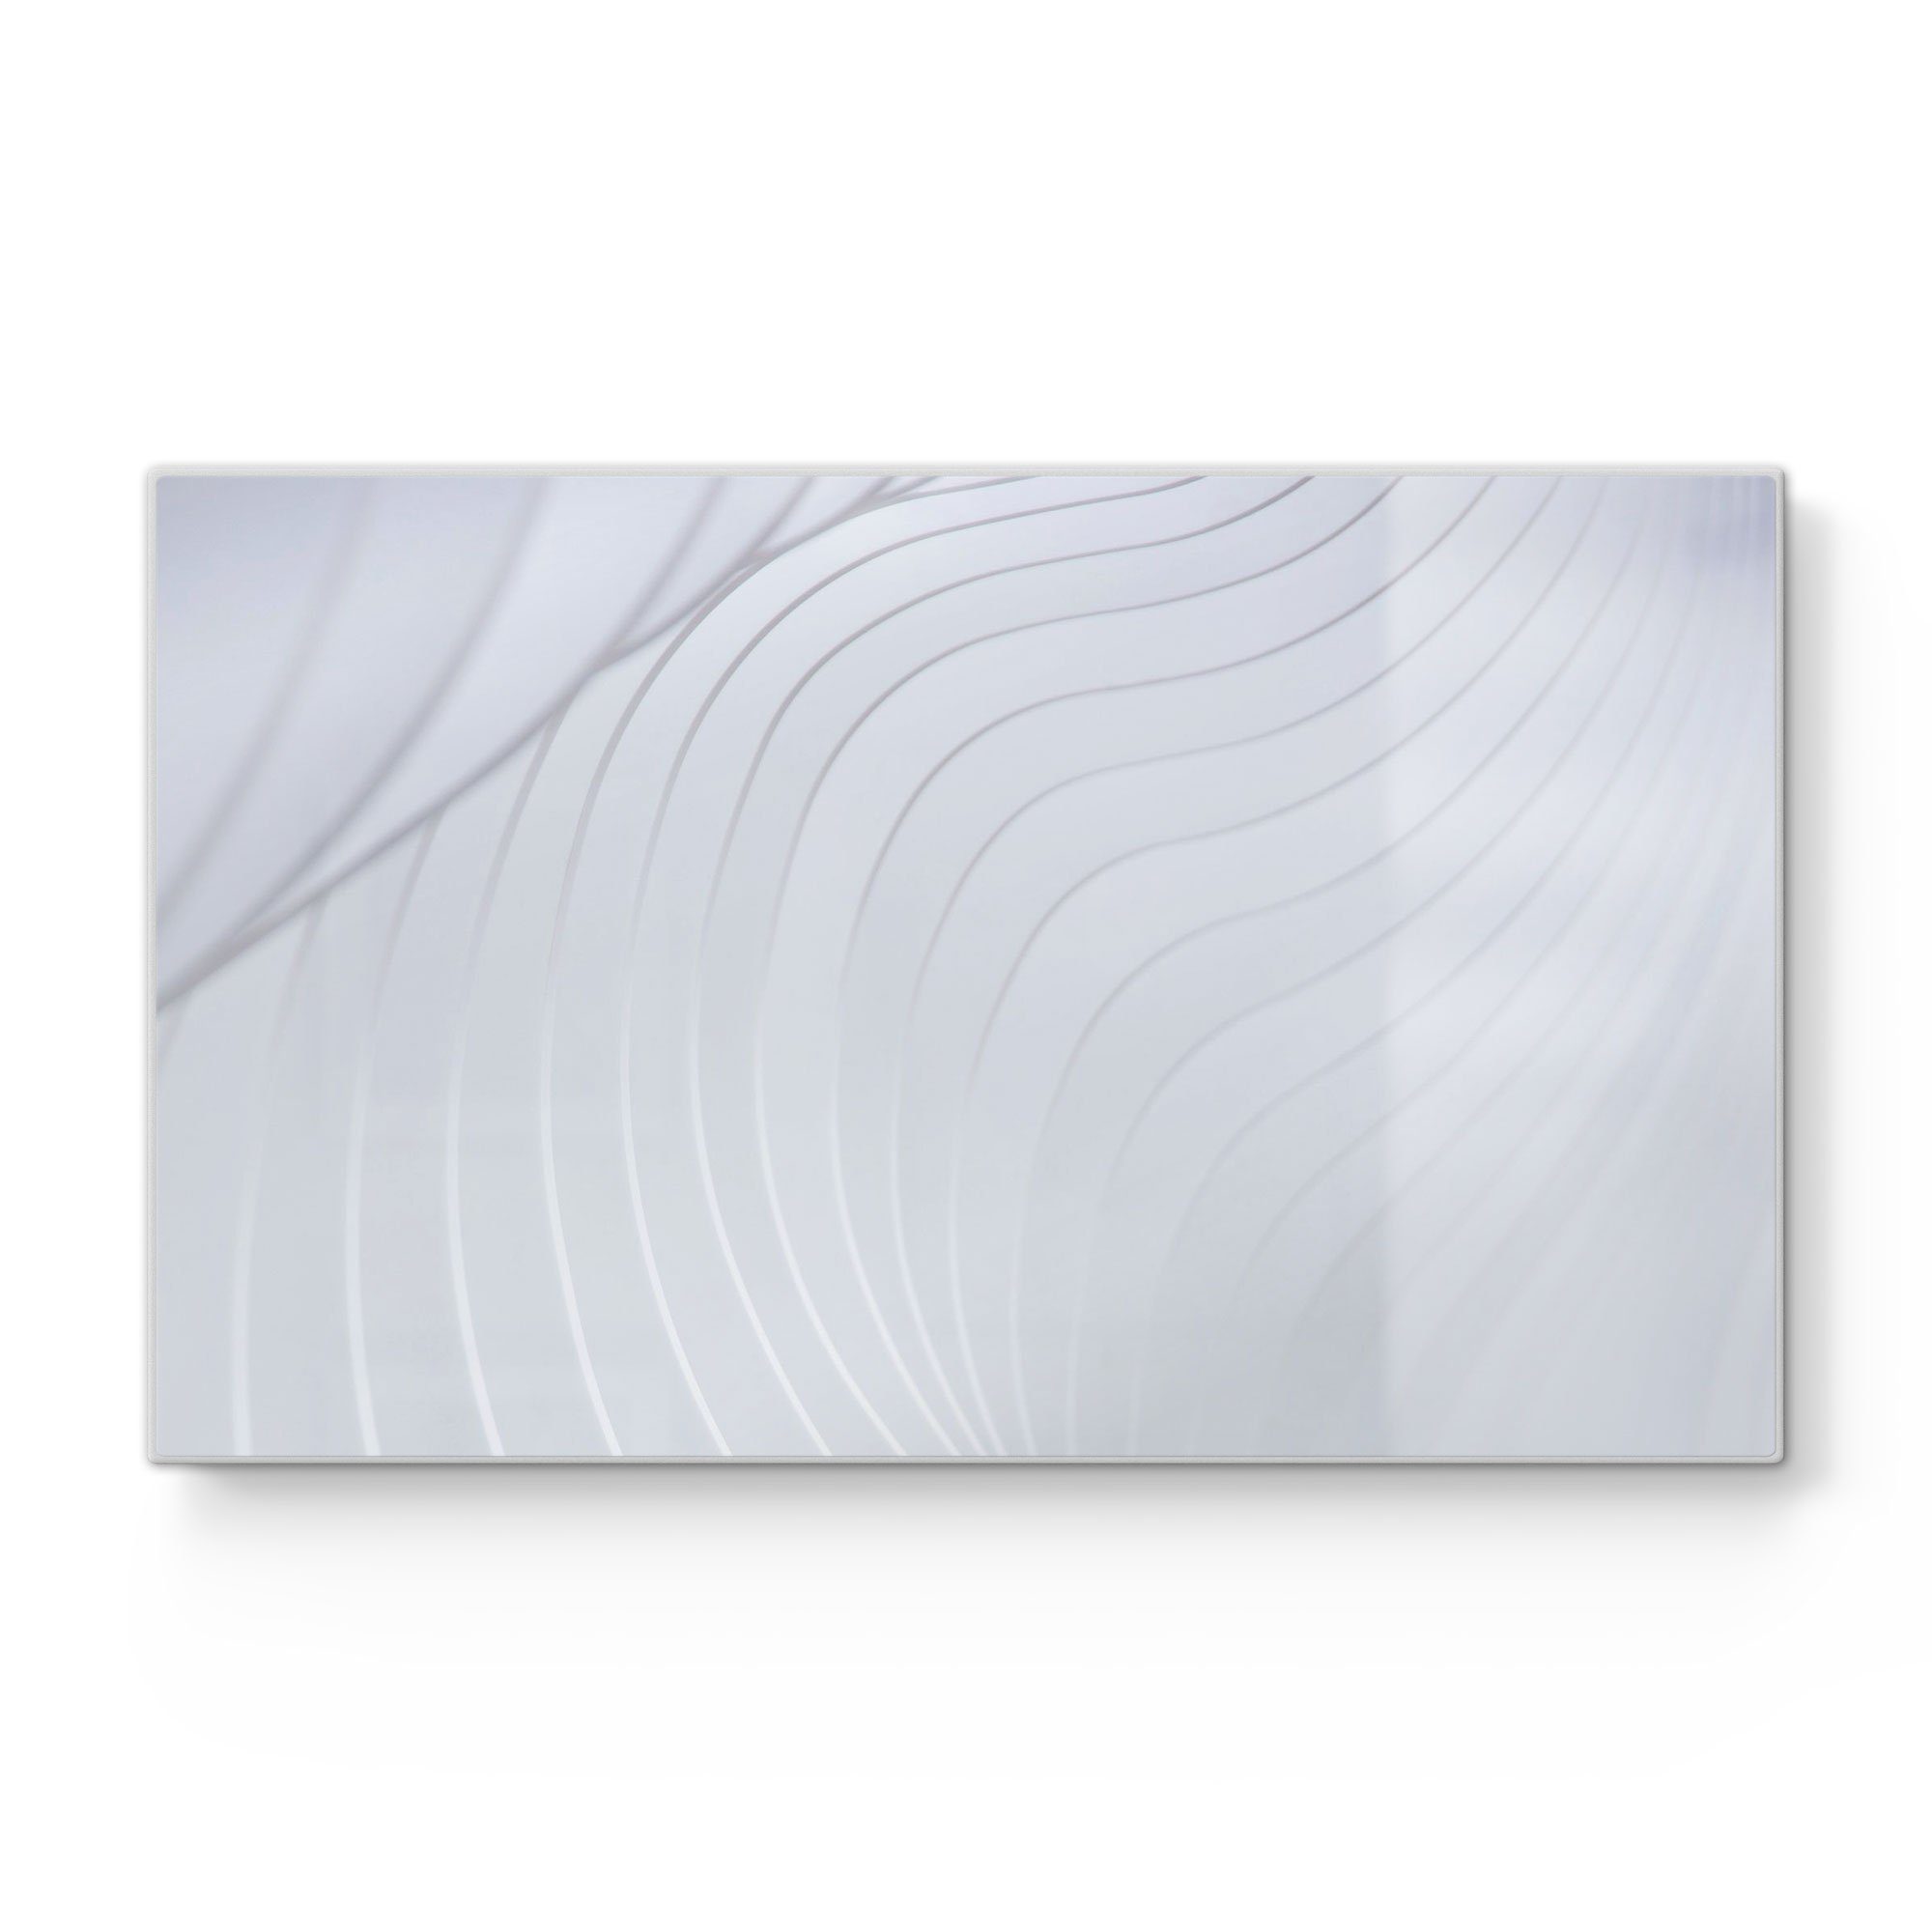 DEQORI Schneidebrett 'Abstrakte Wellenstruktur', Glas, Platte Frühstücksbrett Schneideplatte